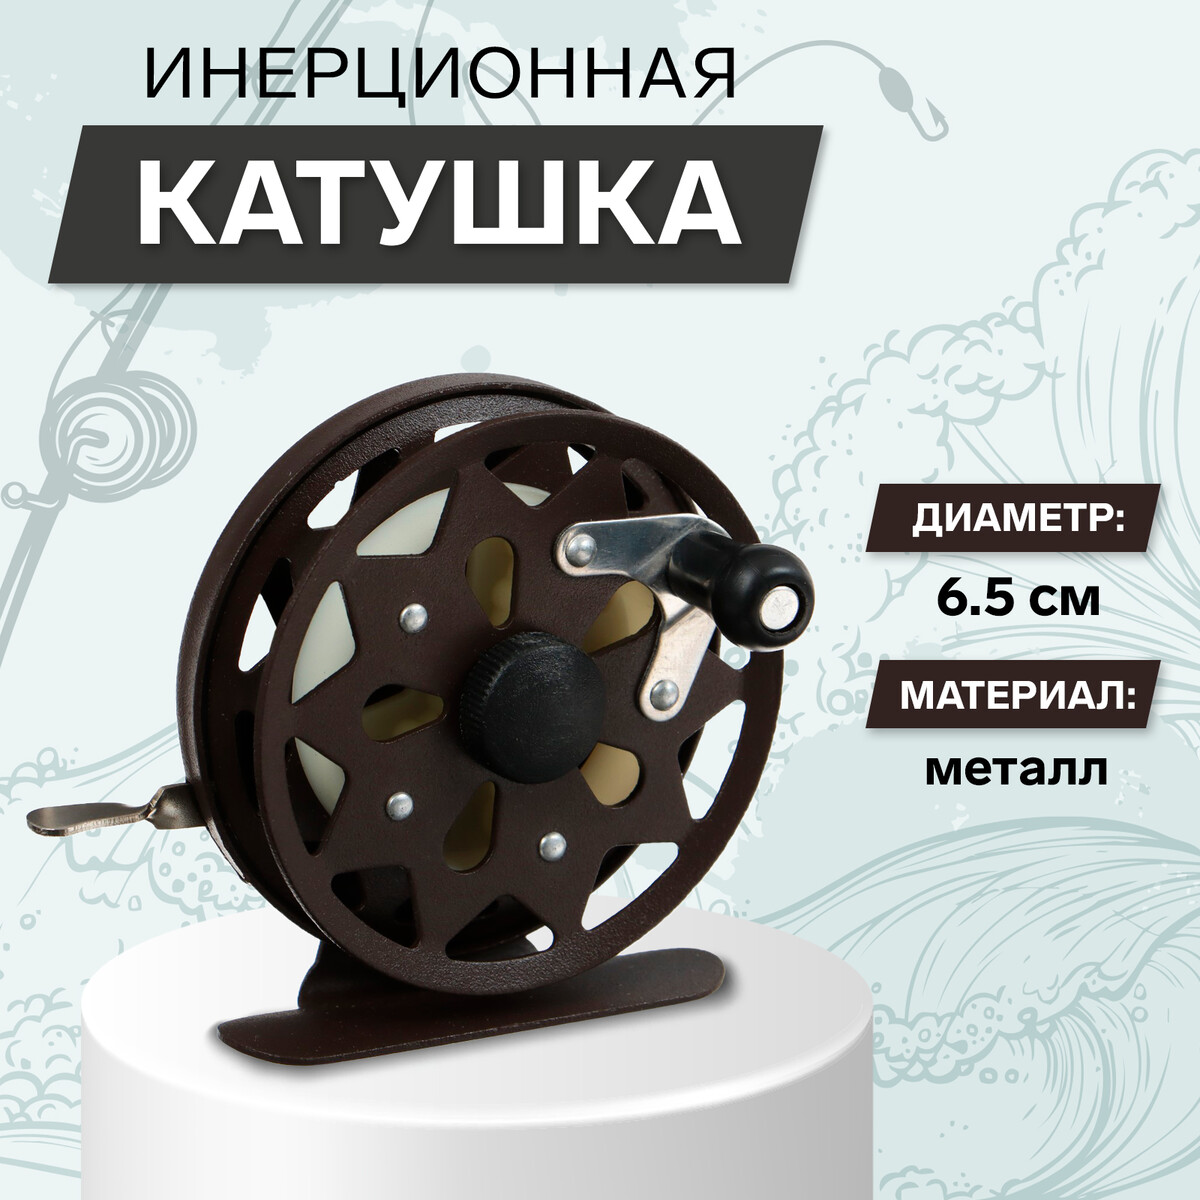 Катушка инерционная, металл, диаметр 6.5 см, цвет темно-коричневый,tl65